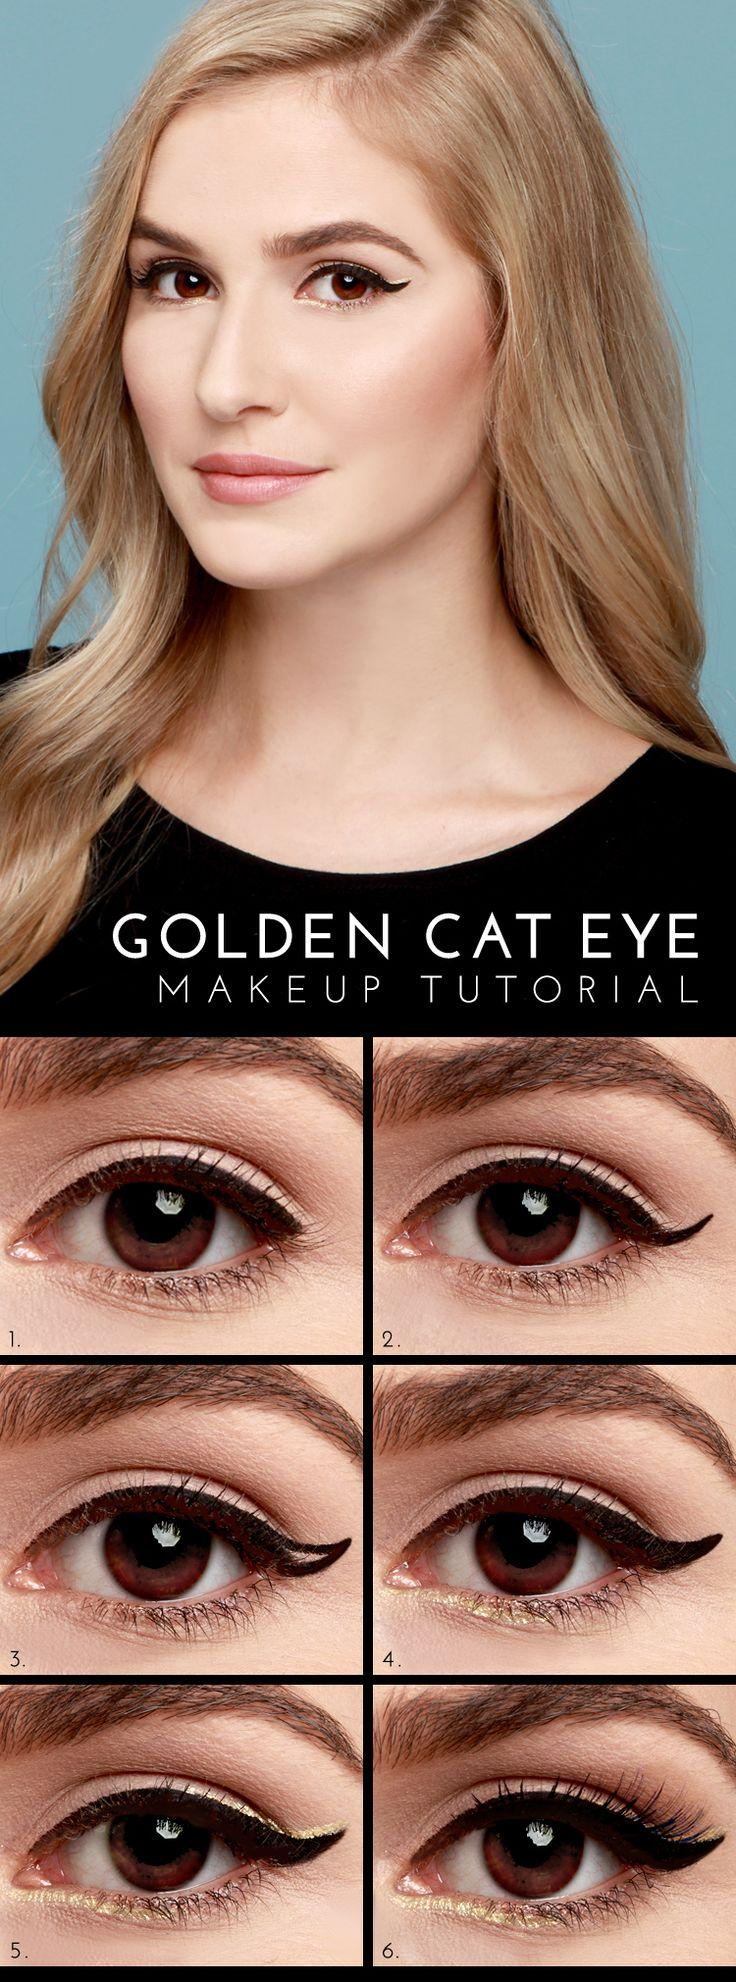 Cat Eye Wedding Makeup Makeup Lulus How To Golden Cat Eye Tutorial 2368104 Weddbook